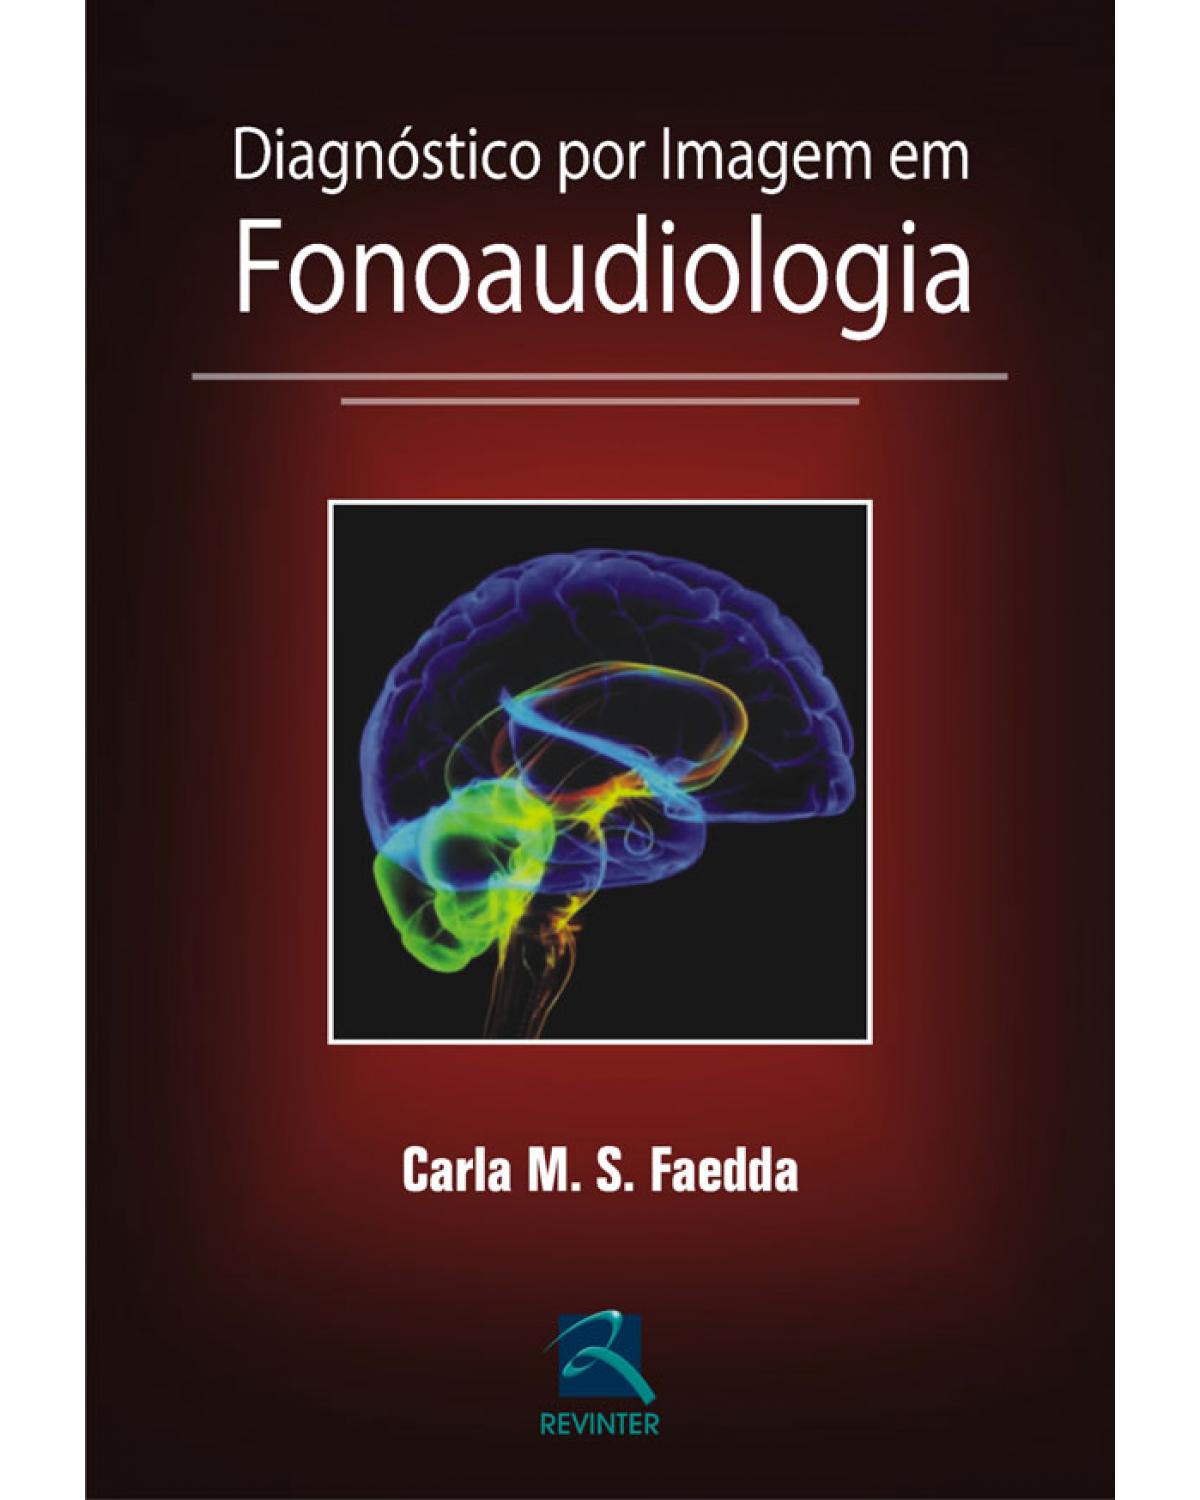 Diagnóstico por imagem em fonoaudiologia - 1ª Edição | 2010